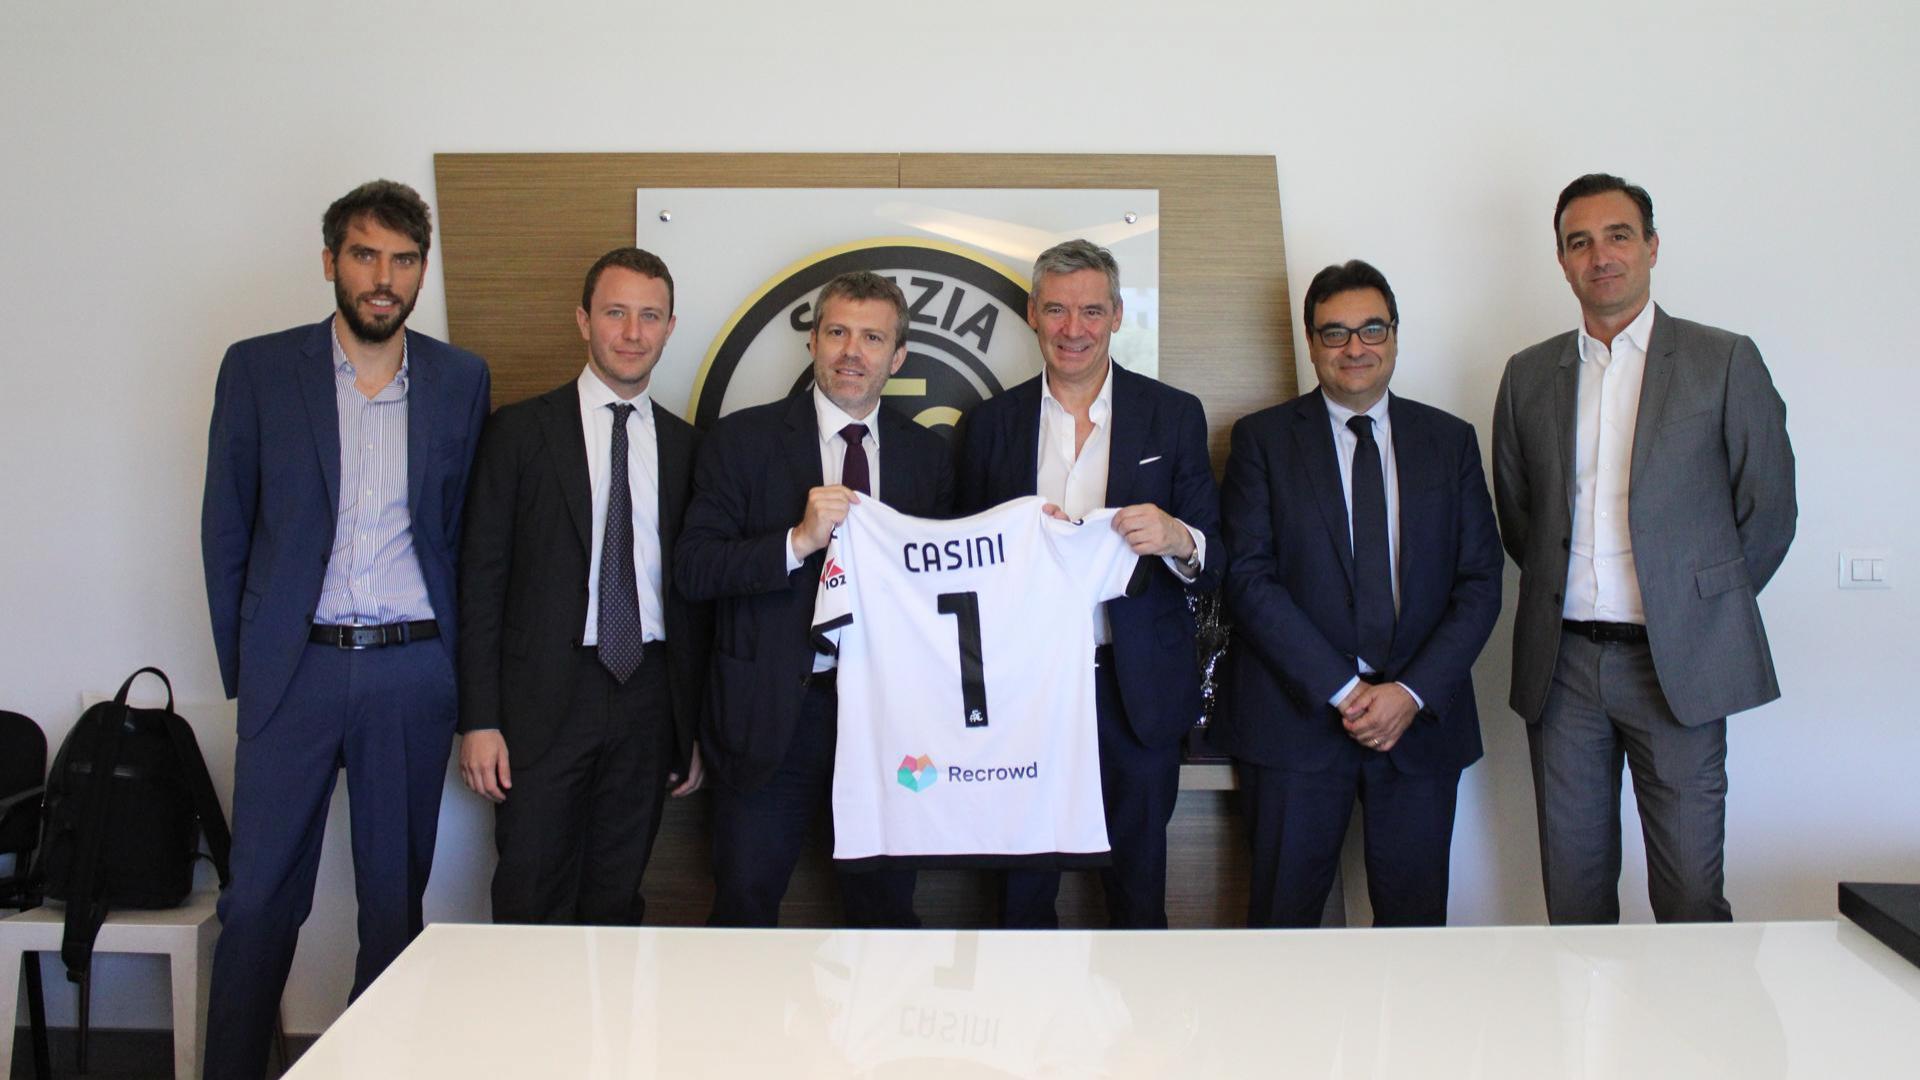 The President of the Lega Serie A Lorenzo Casini visits Spezia Calcio